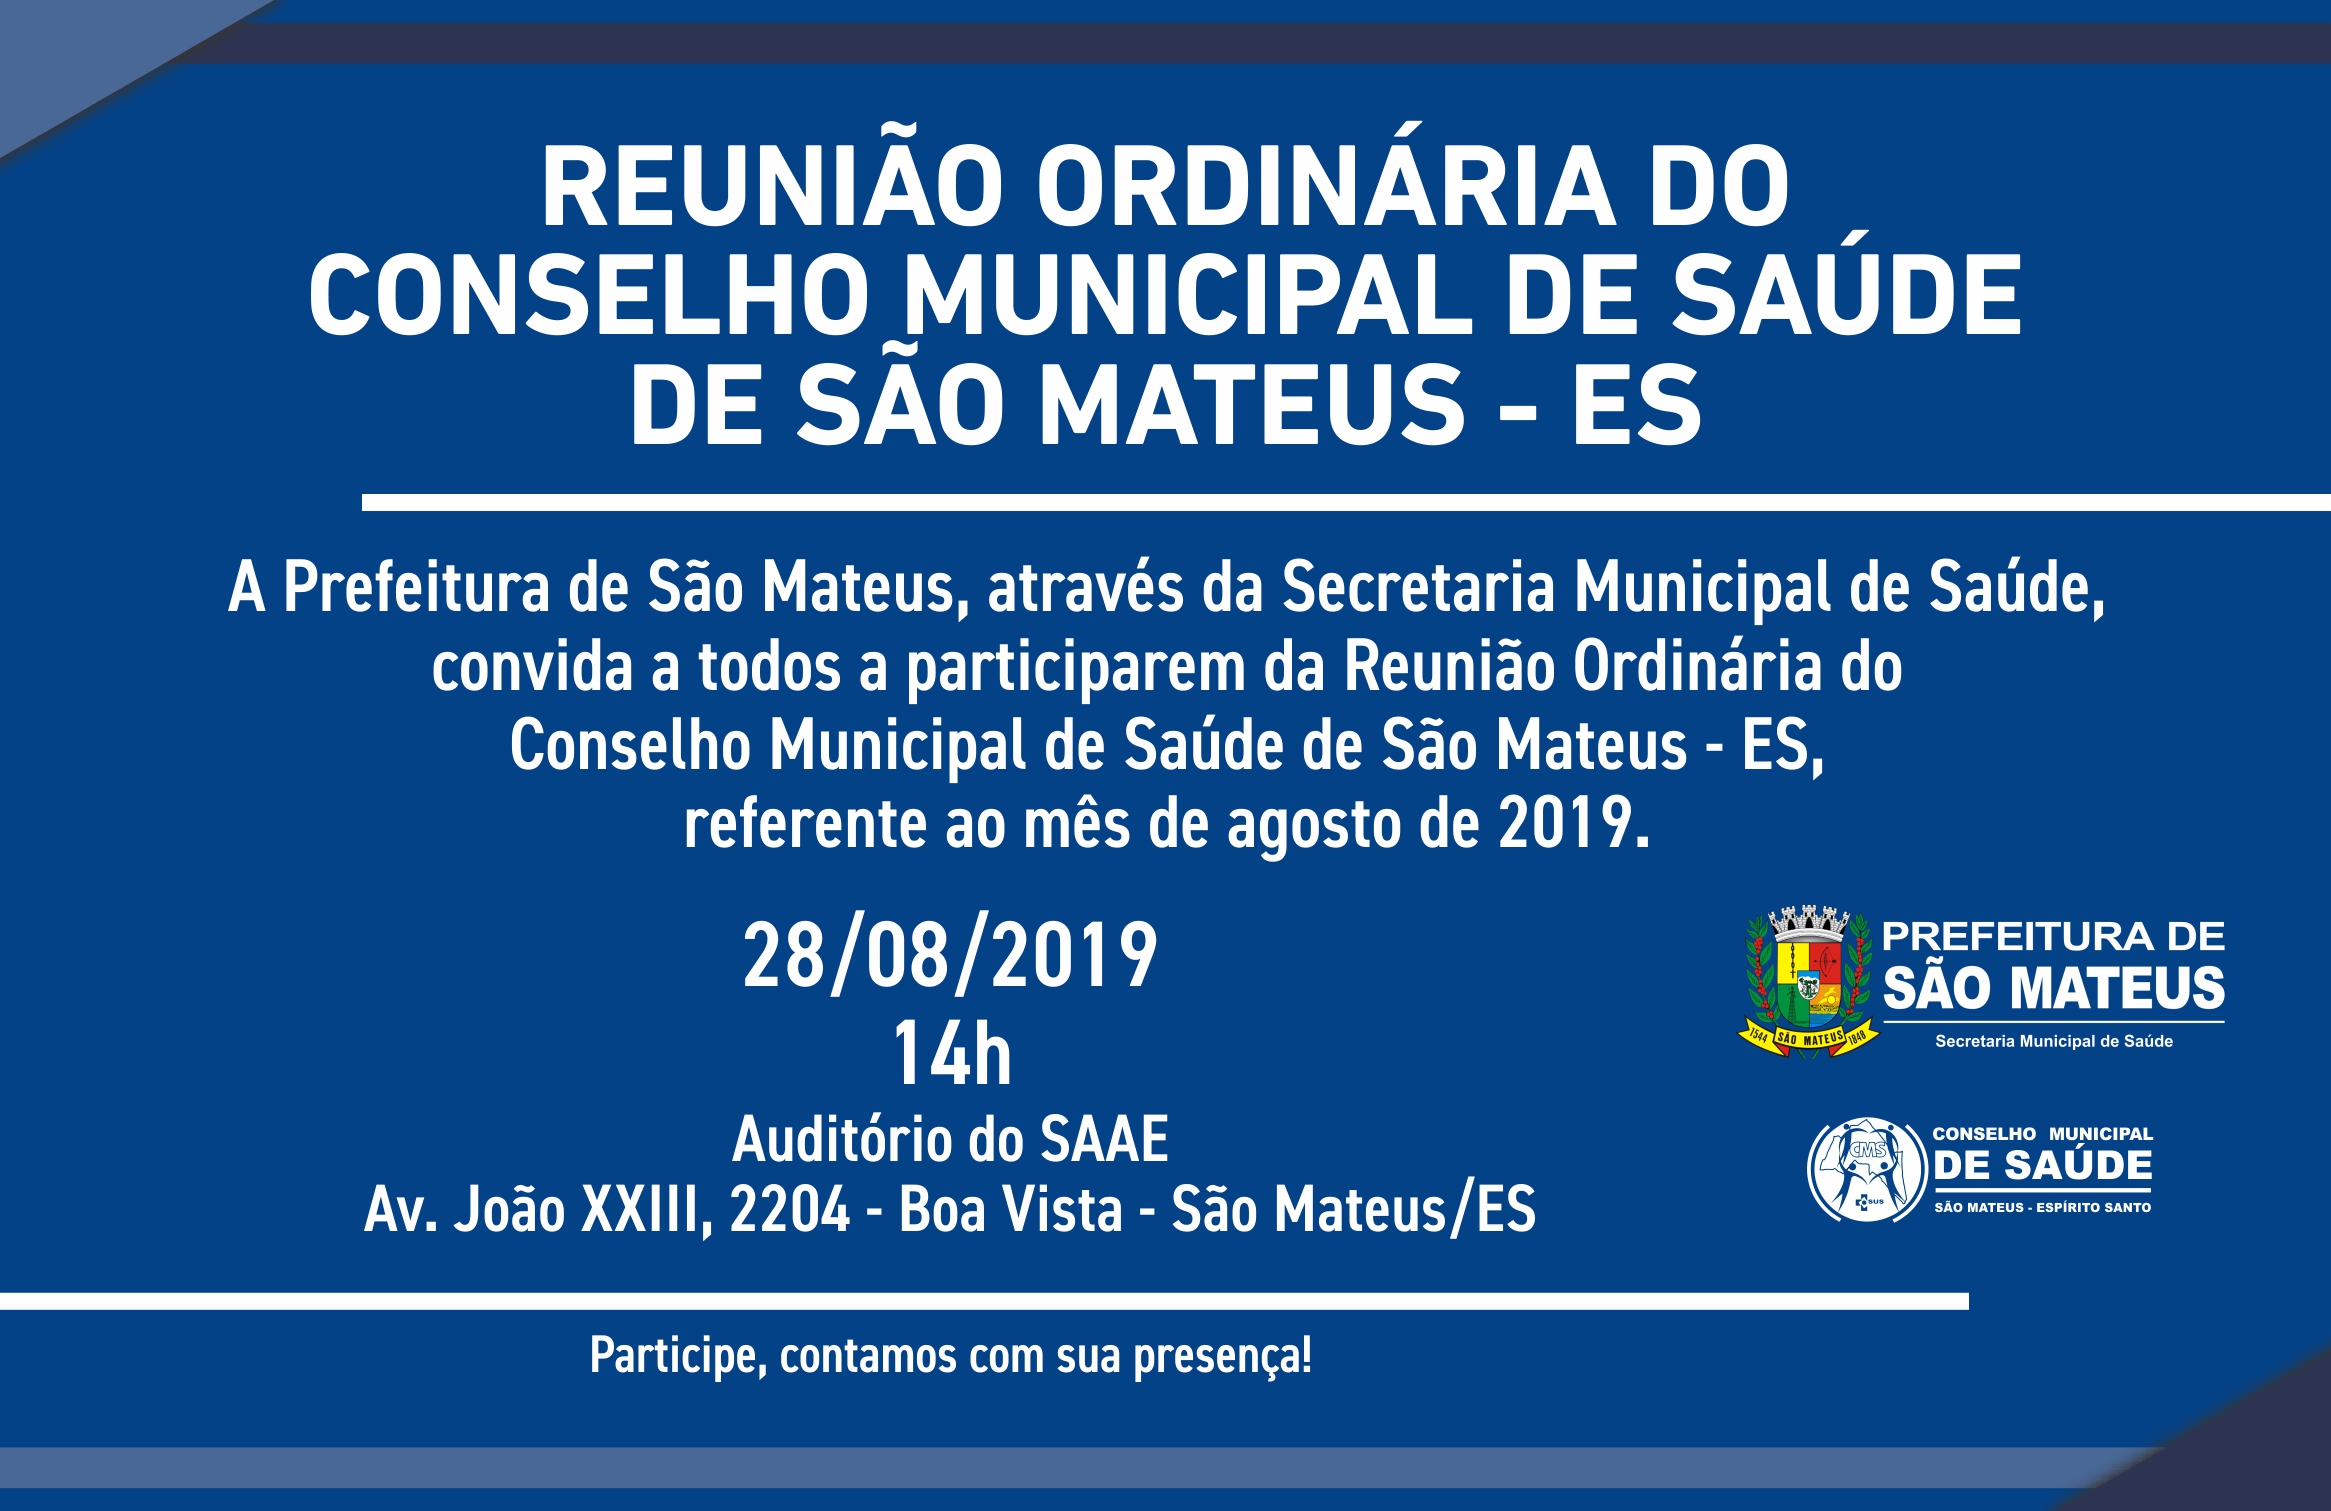 REUNIÃO ORDINÁRIA DO CONSELHO MUNICIPAL DE SAÚDE DE SÃO MATEUS - ES